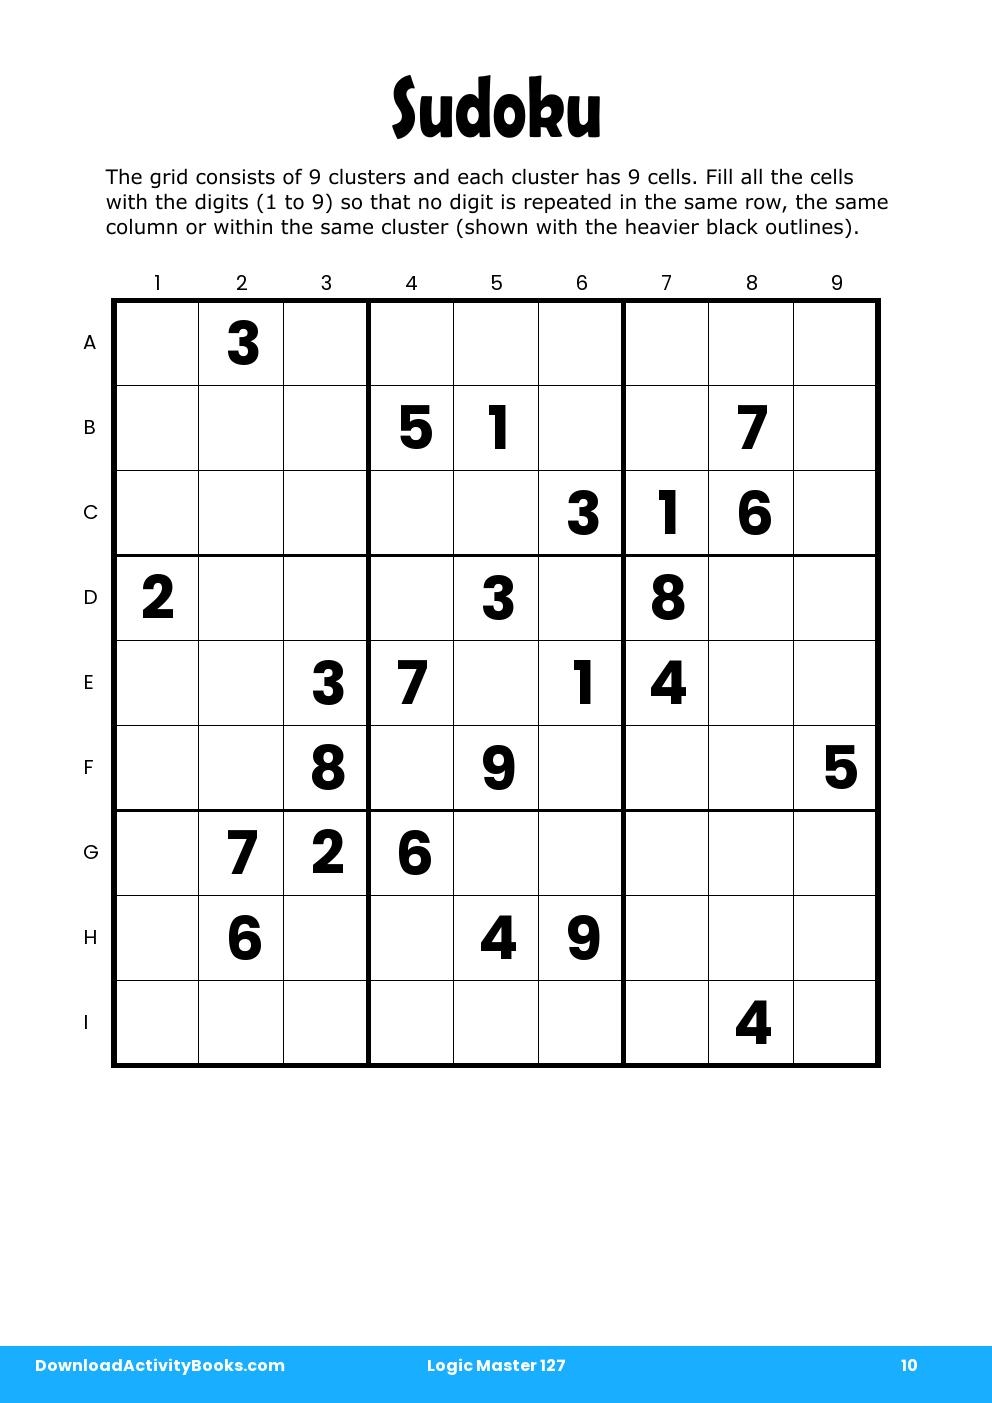 Sudoku in Logic Master 127